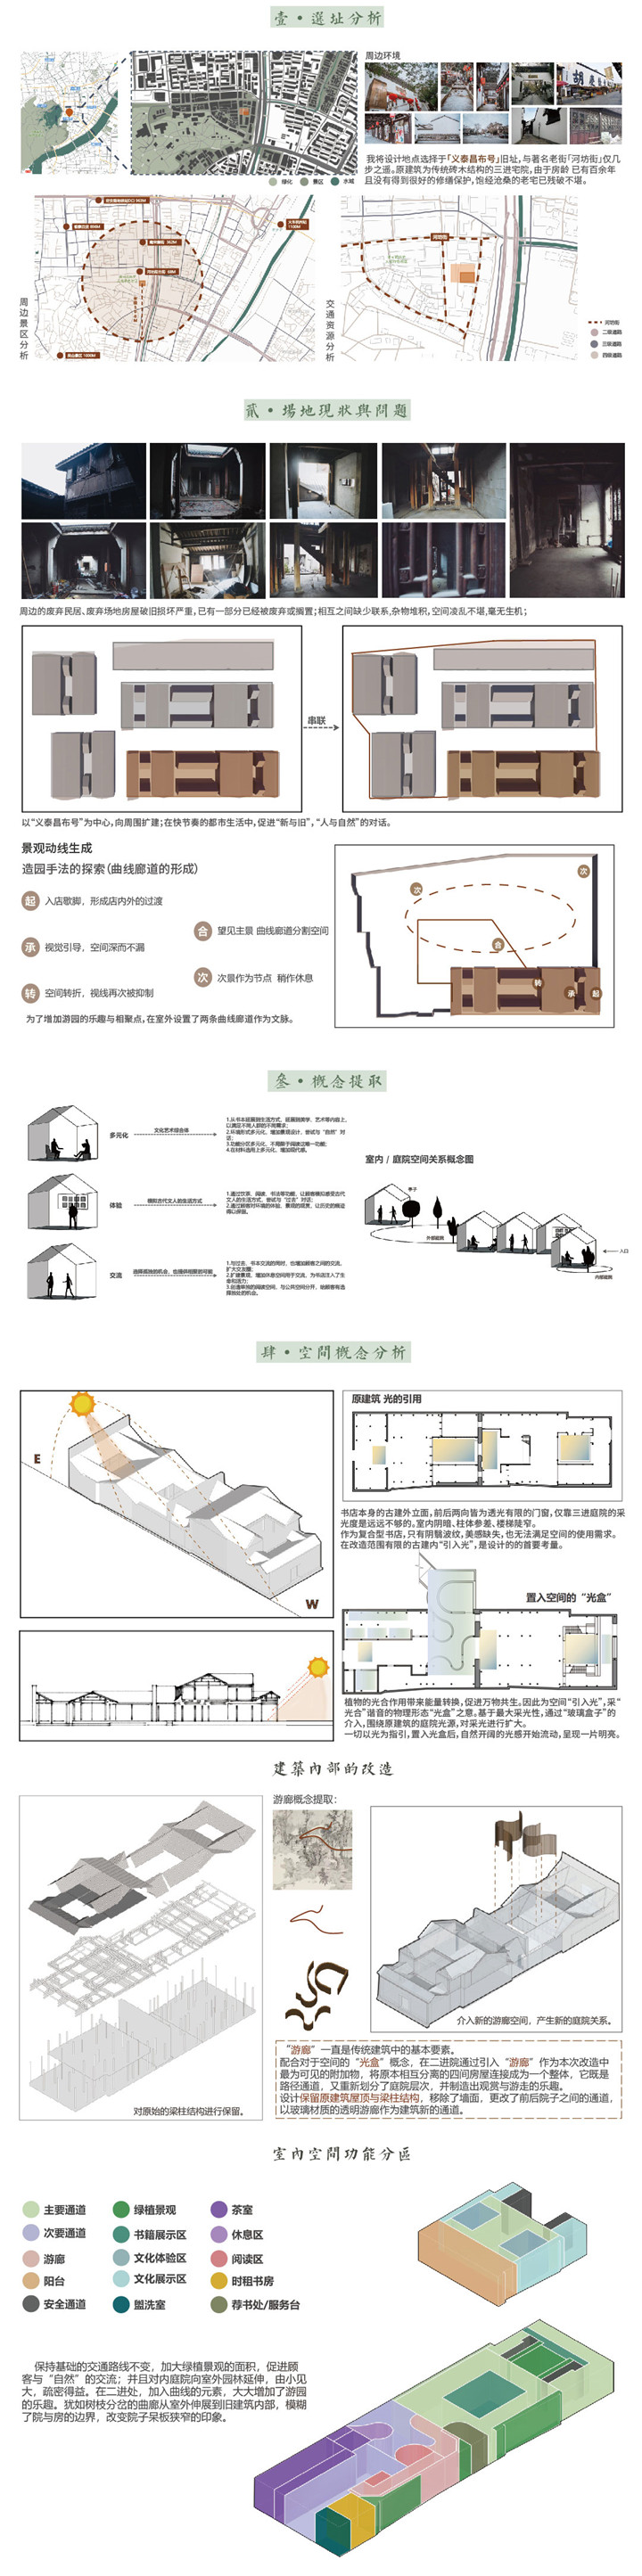 环境设计——方圆书局-设计中国